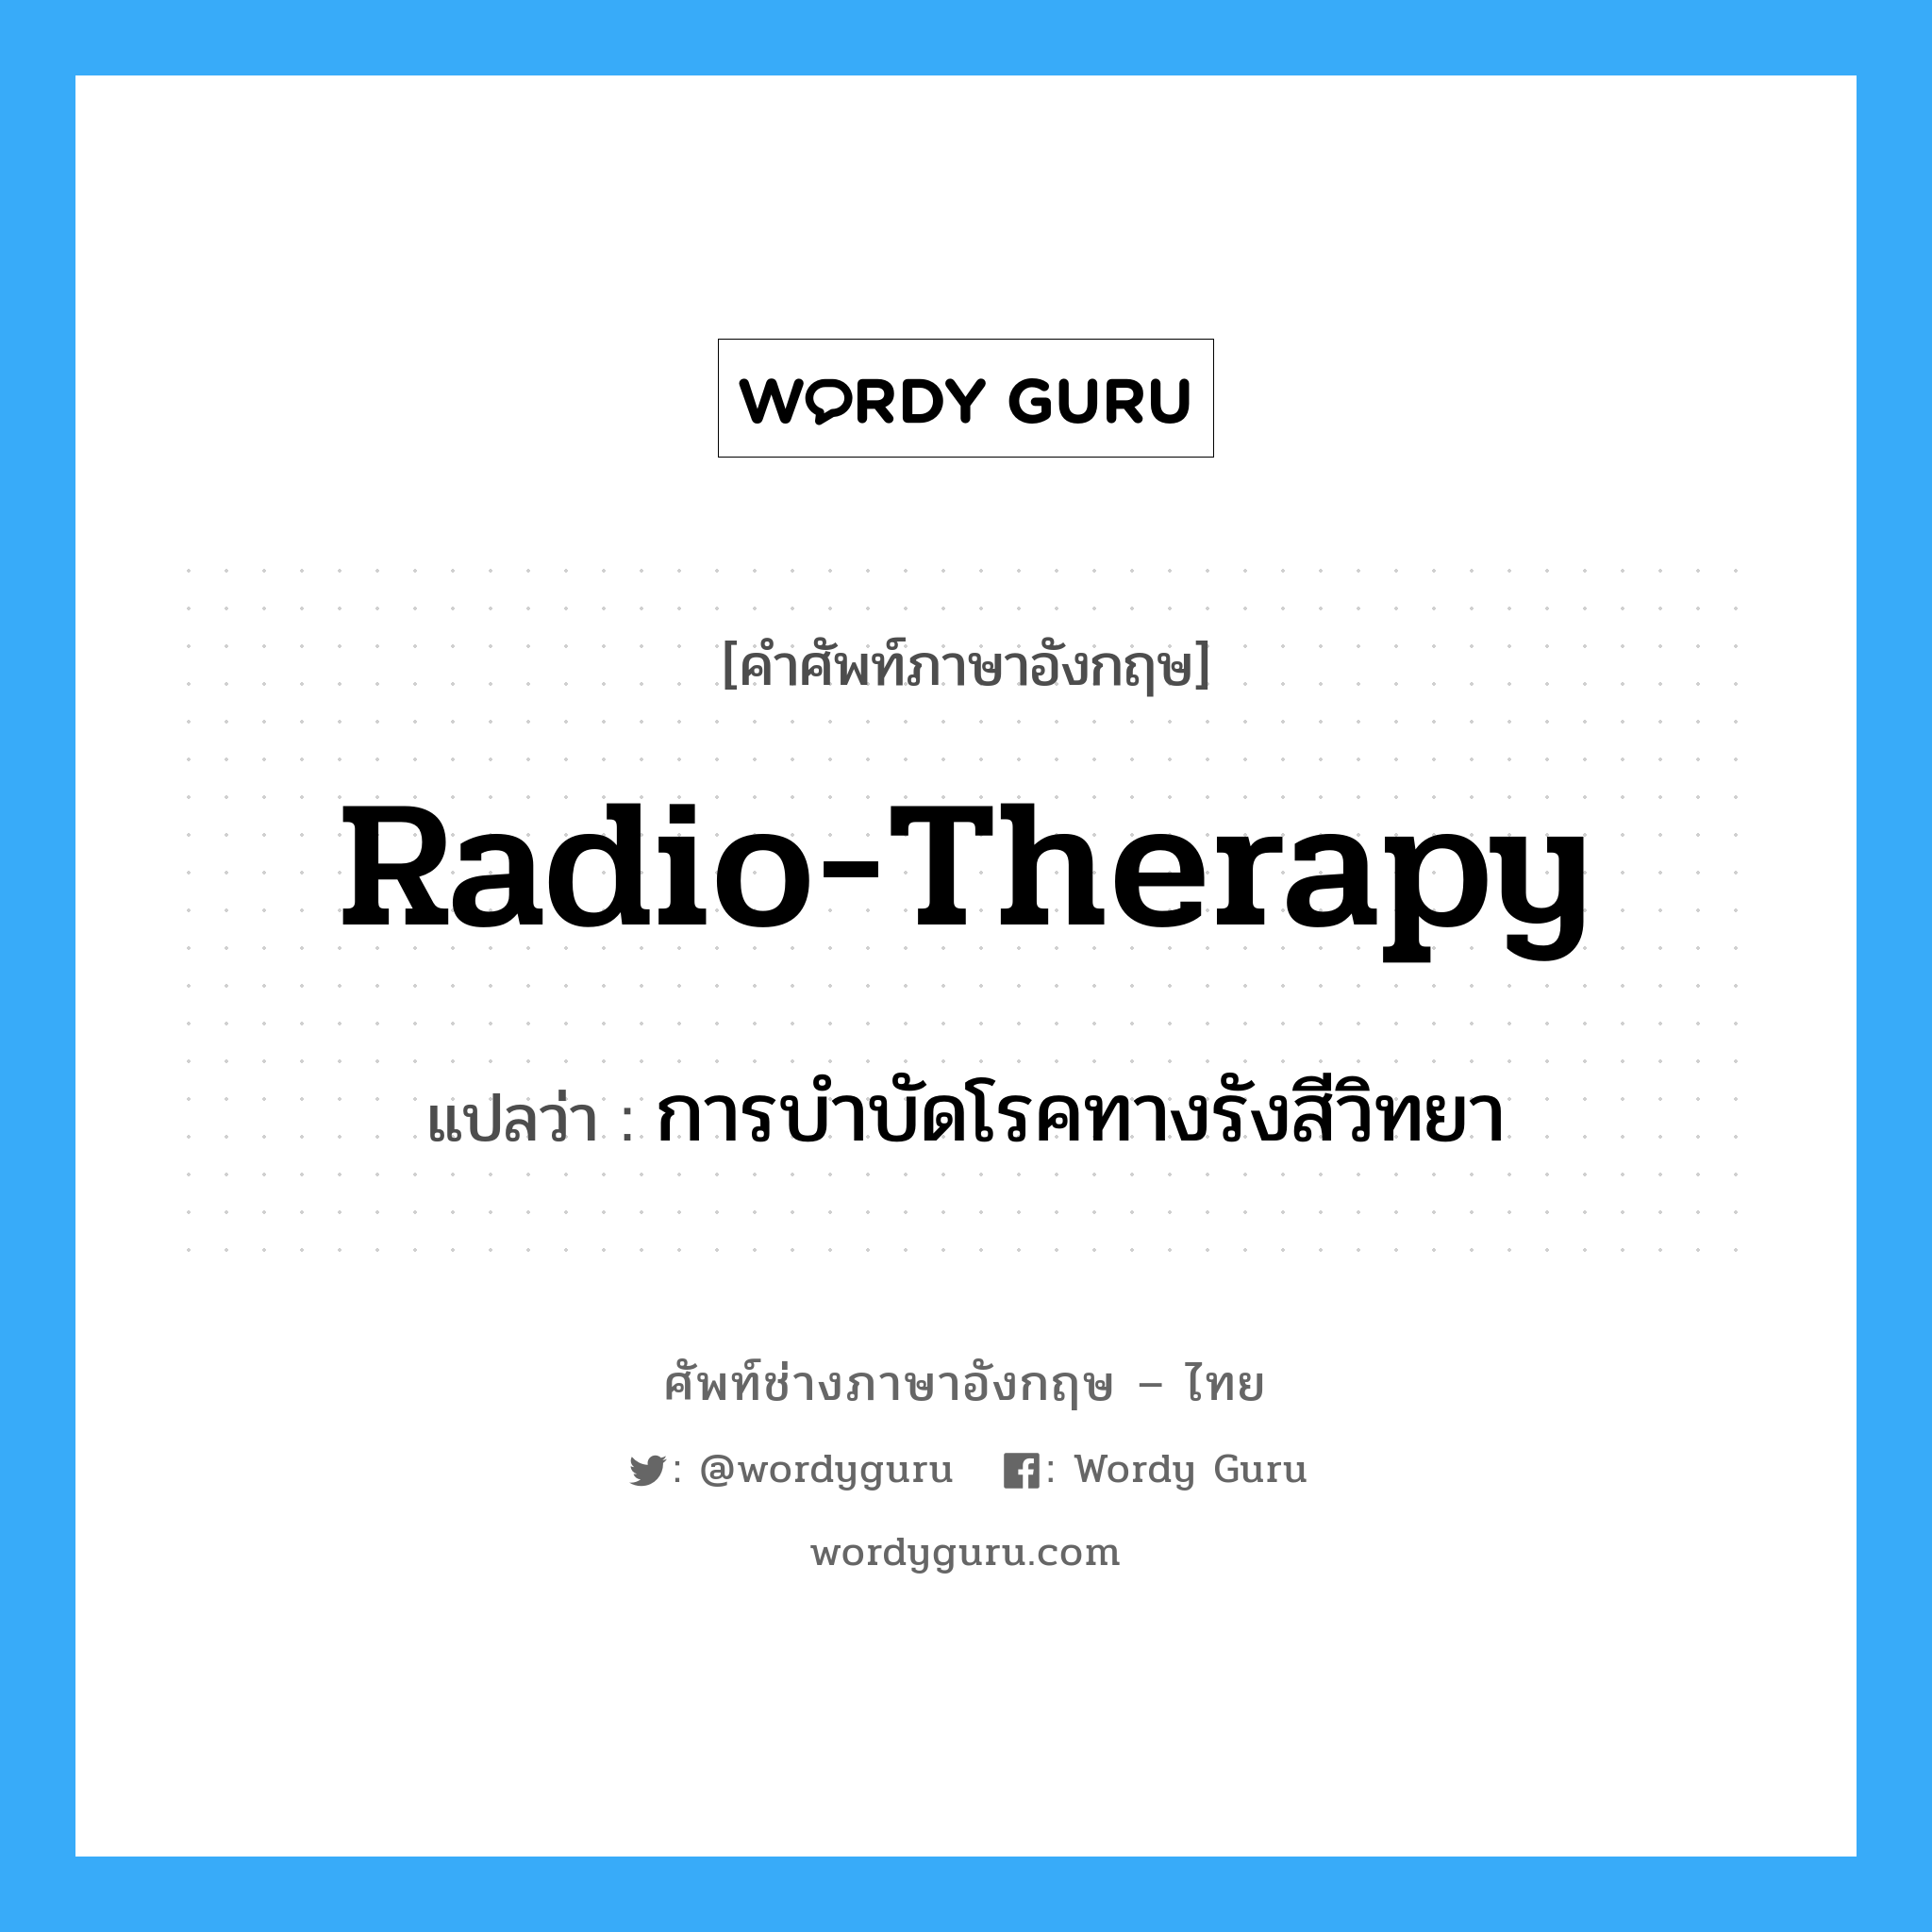 การบำบัดโรคทางรังสีวิทยา ภาษาอังกฤษ?, คำศัพท์ช่างภาษาอังกฤษ - ไทย การบำบัดโรคทางรังสีวิทยา คำศัพท์ภาษาอังกฤษ การบำบัดโรคทางรังสีวิทยา แปลว่า radio-therapy